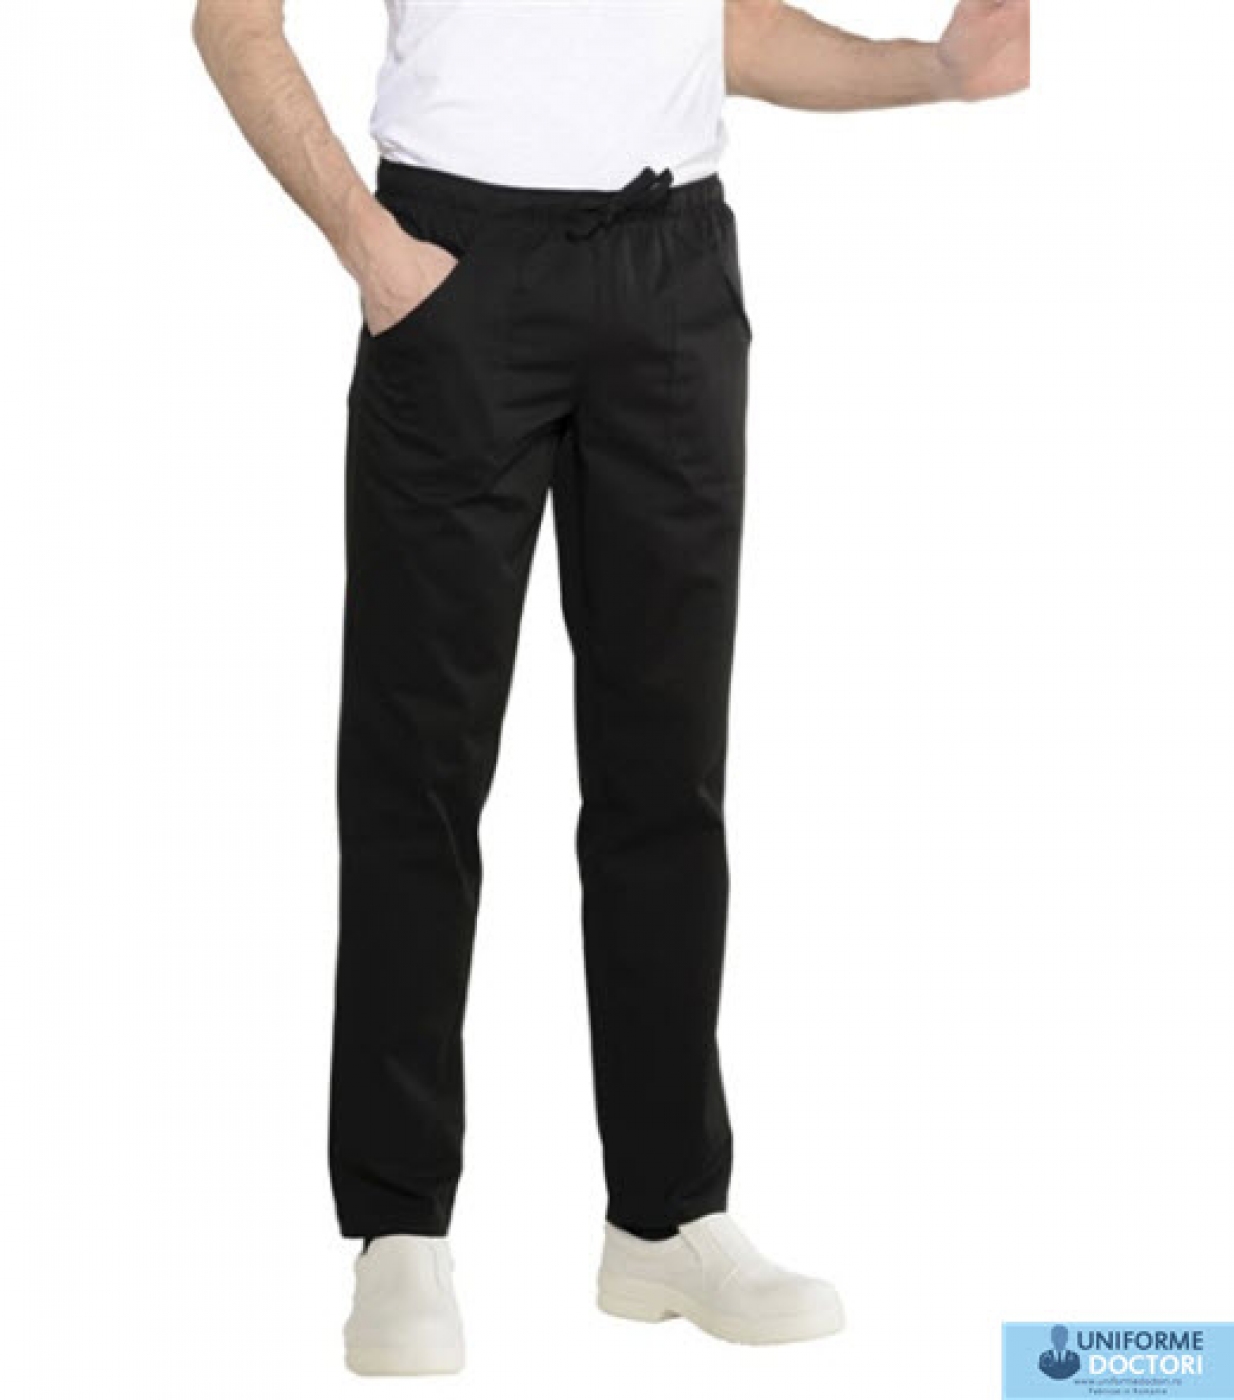 Pantalon medical, model slim-fit cu buzunare elastic si snur in talie, barbat